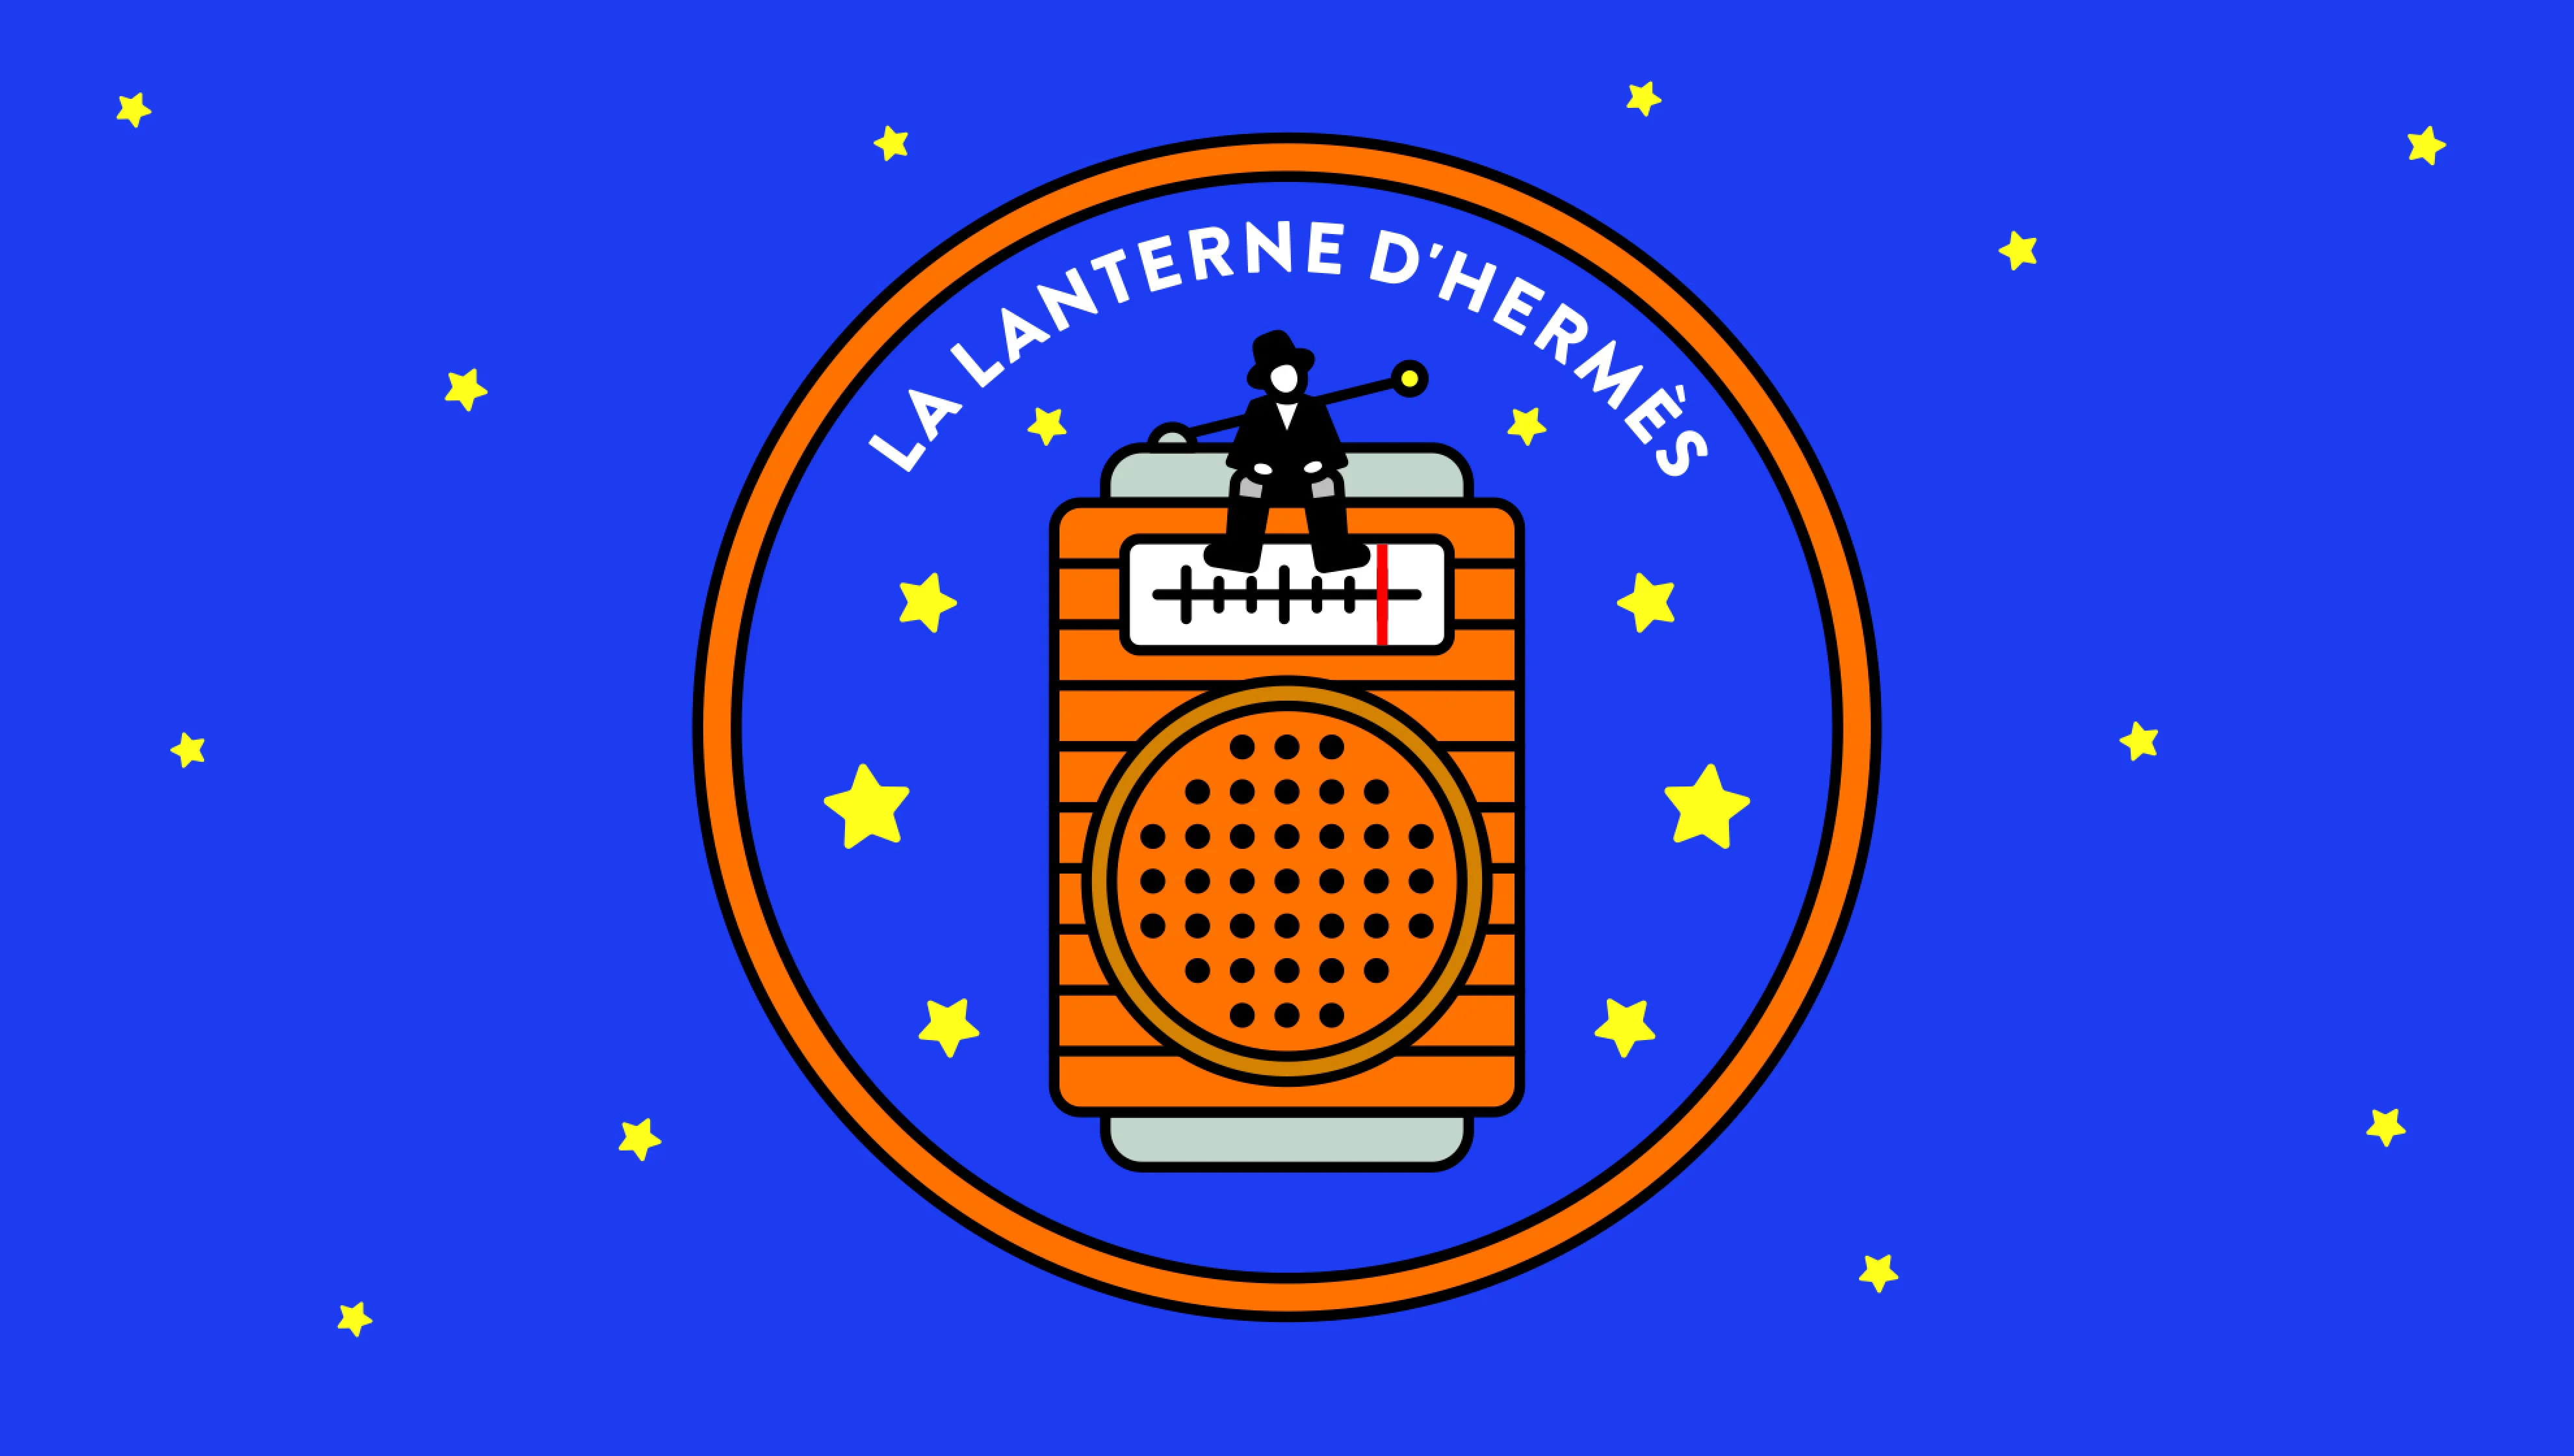 LA LANTERNE D'HERMÈS | J-WAVE 81.3 FM